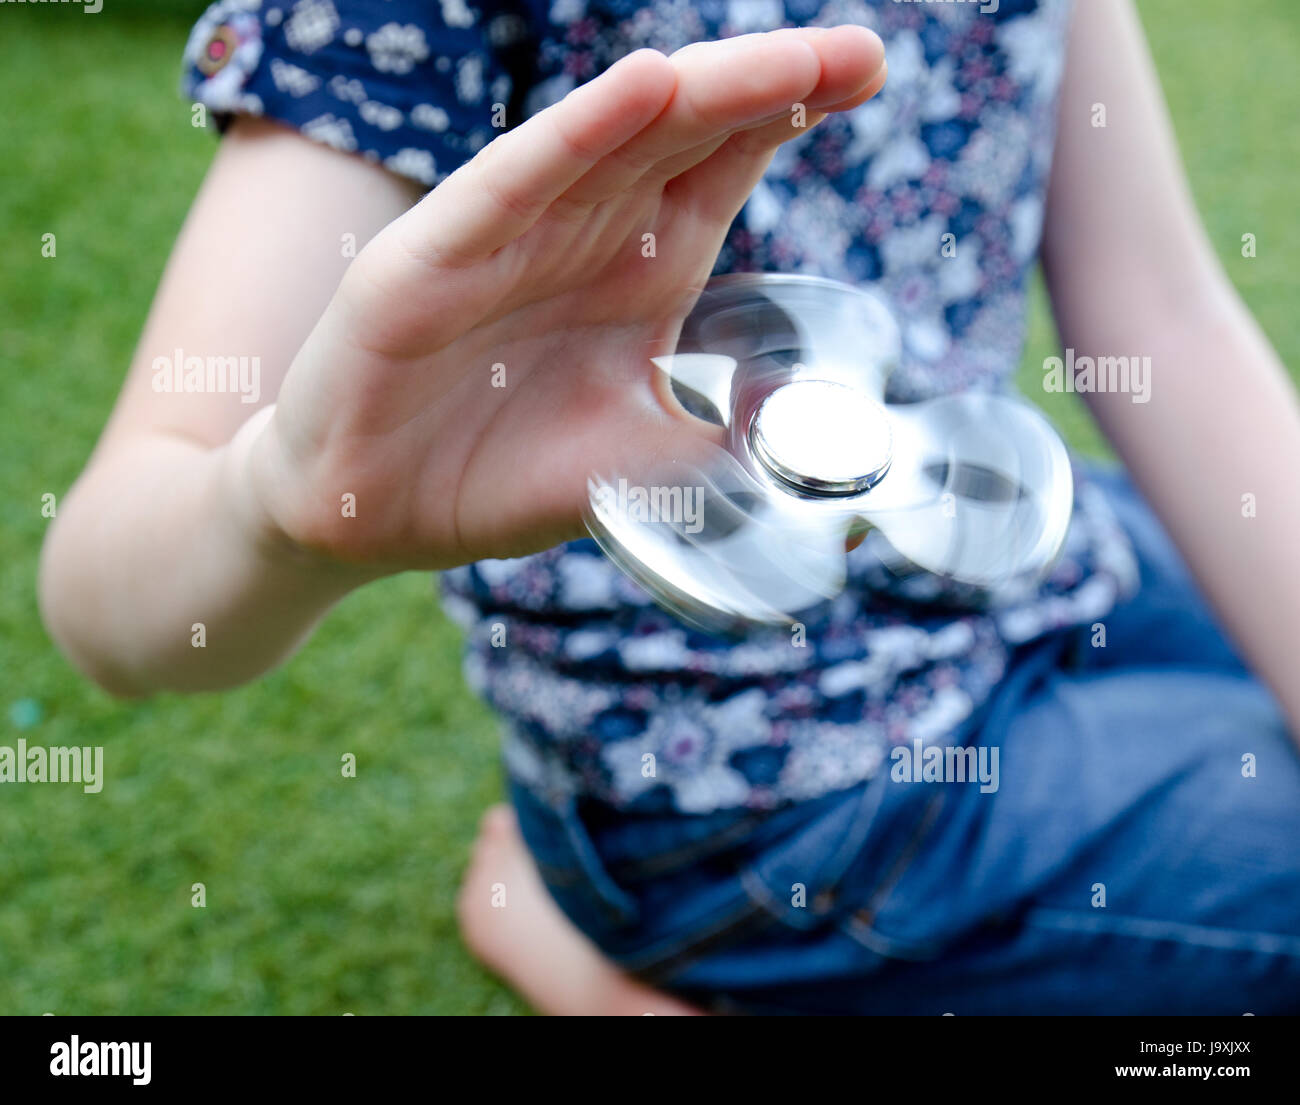 Ein Kind spielt mit einem drehenden Fidget Spinner im Garten Stockfoto